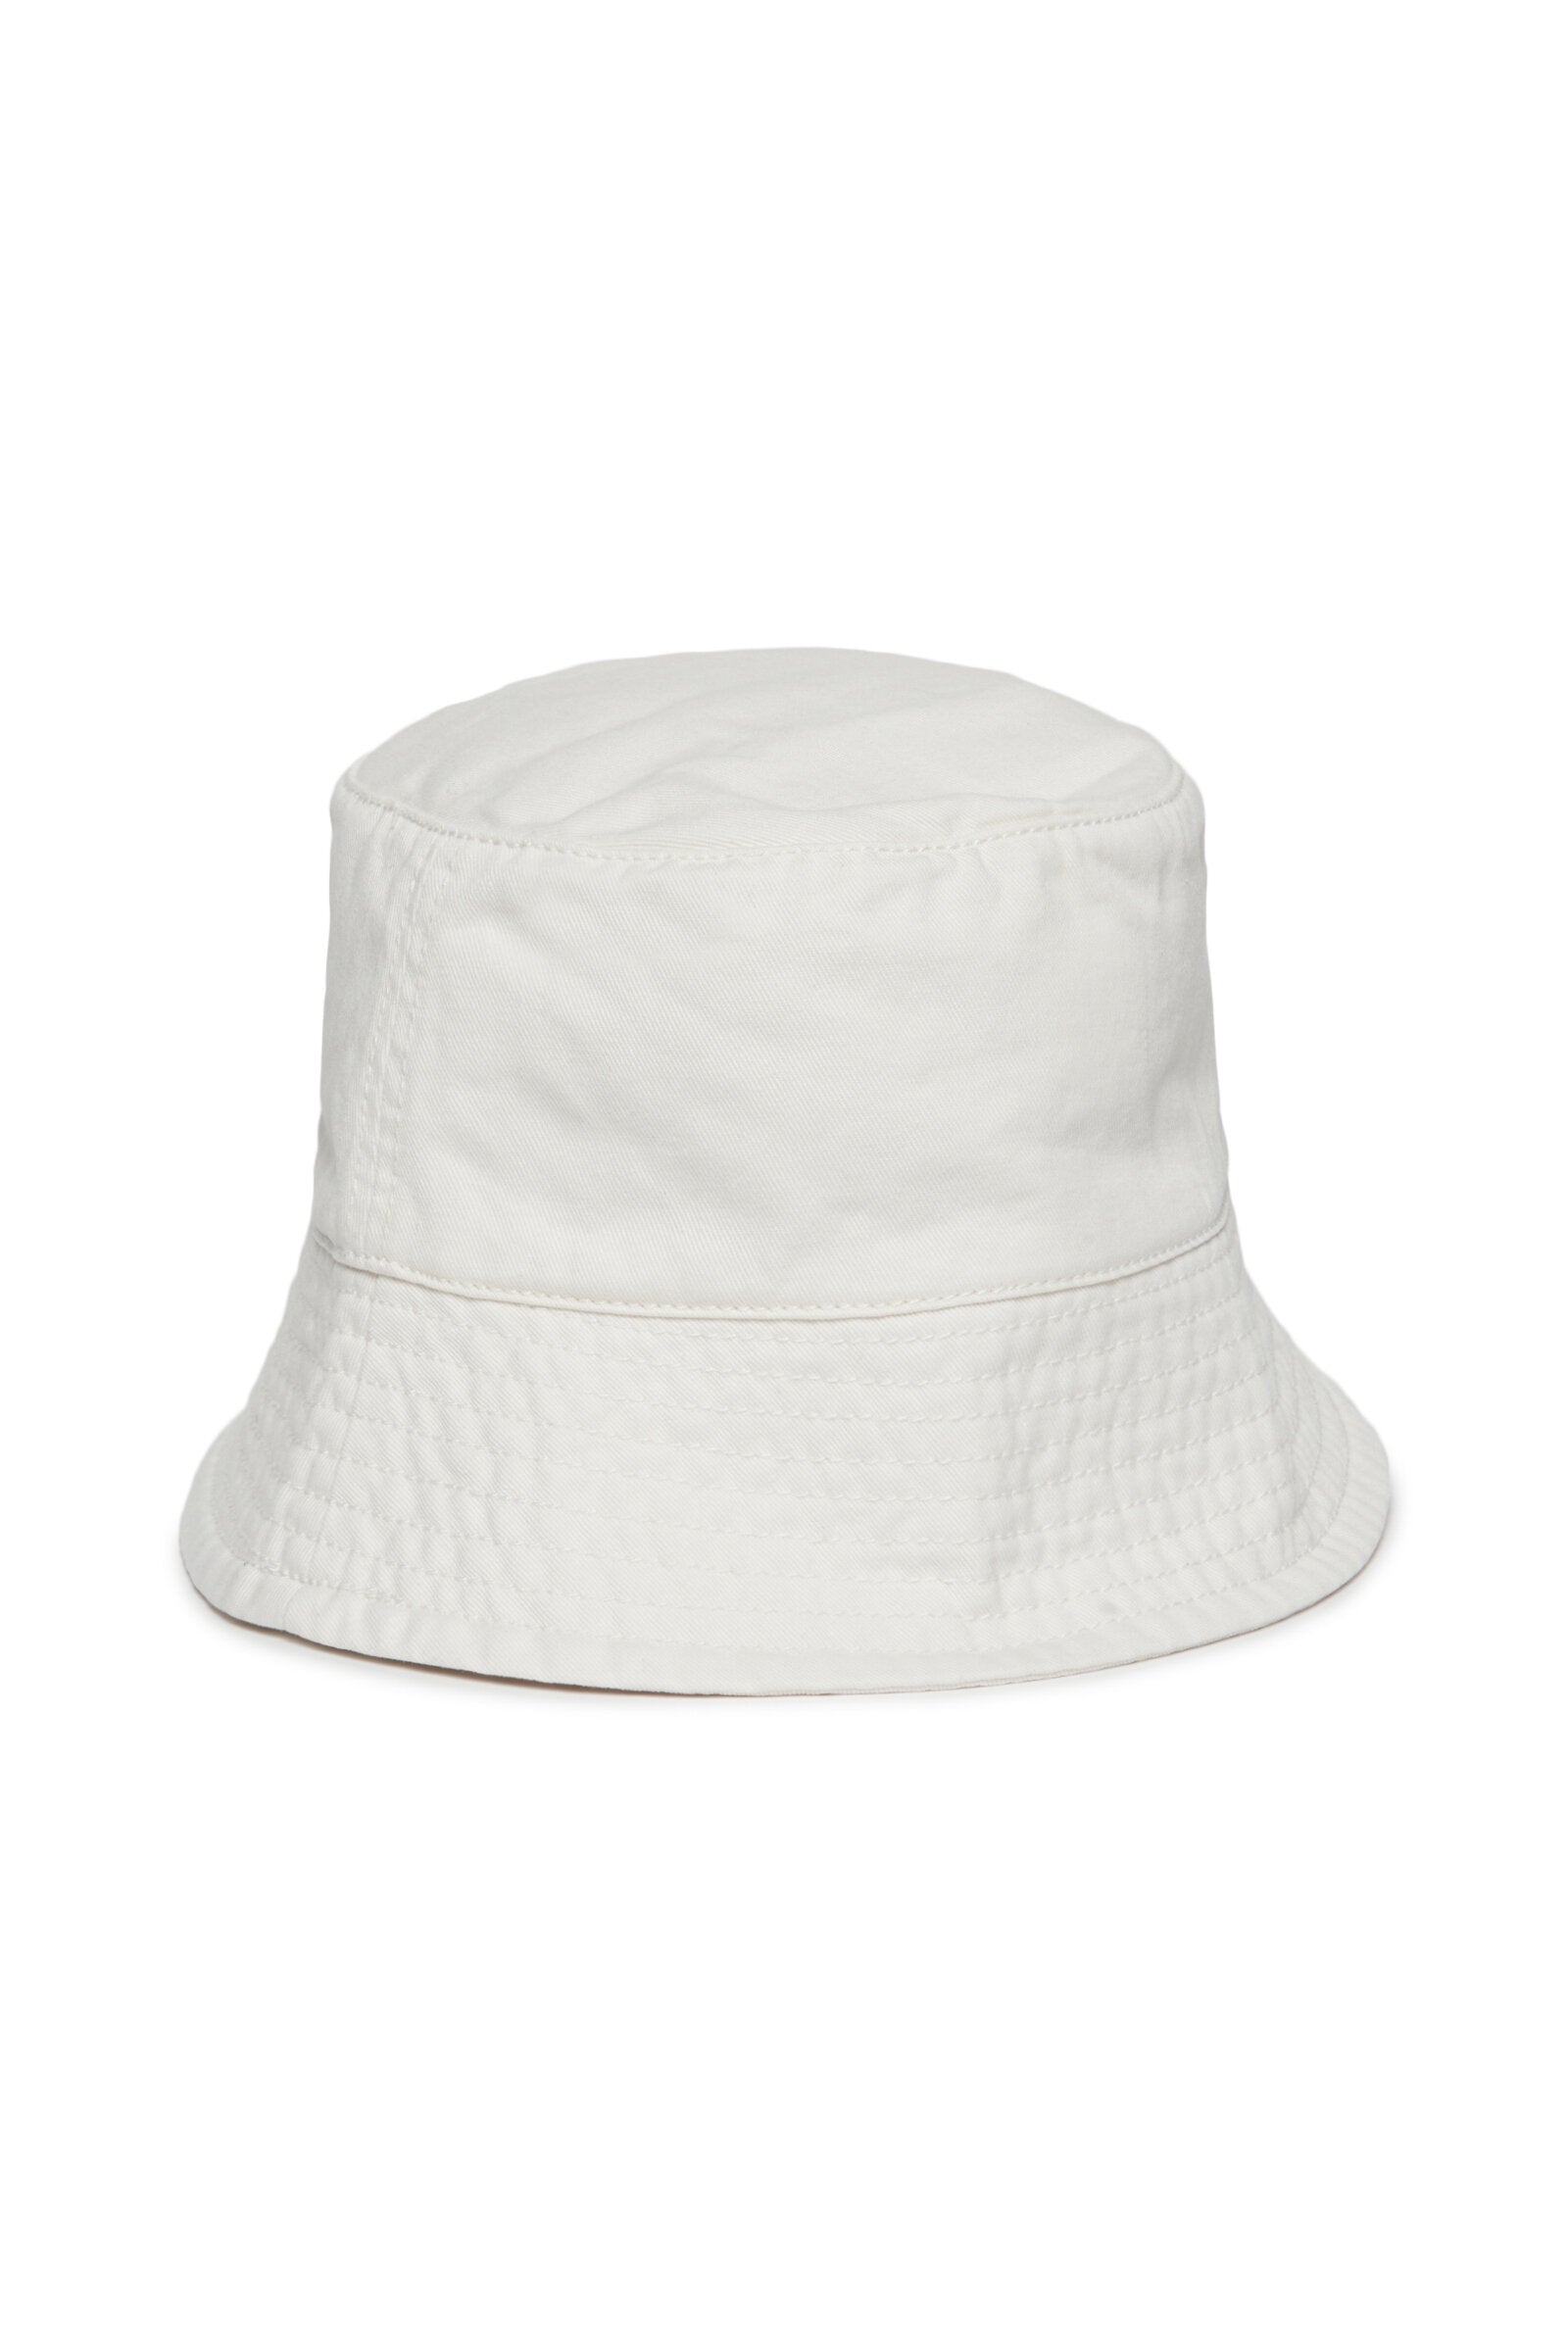 White gabardine fisherman's cap with logo